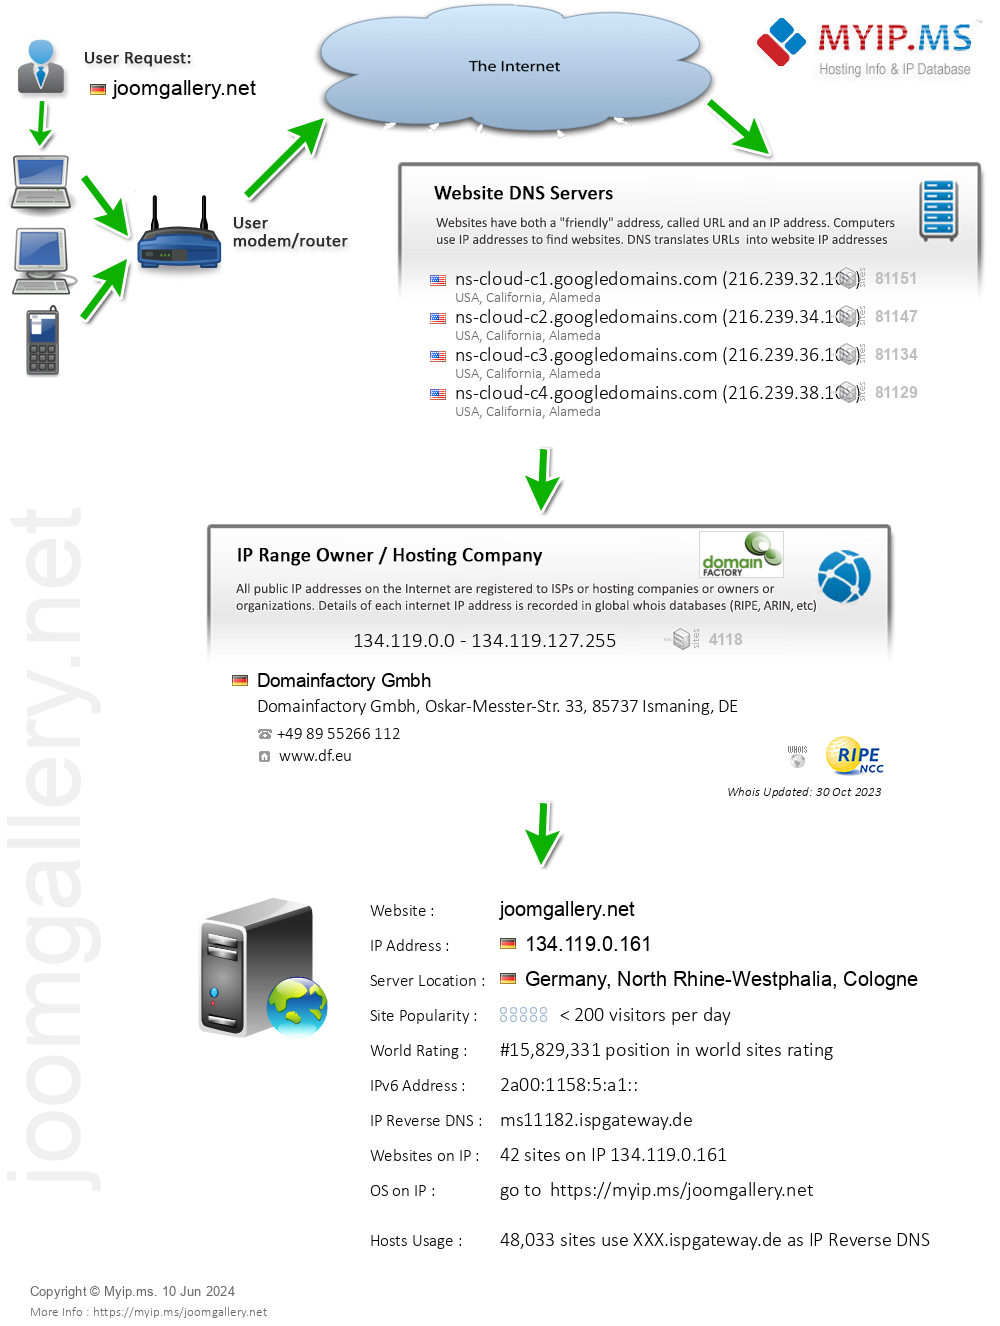 Joomgallery.net - Website Hosting Visual IP Diagram